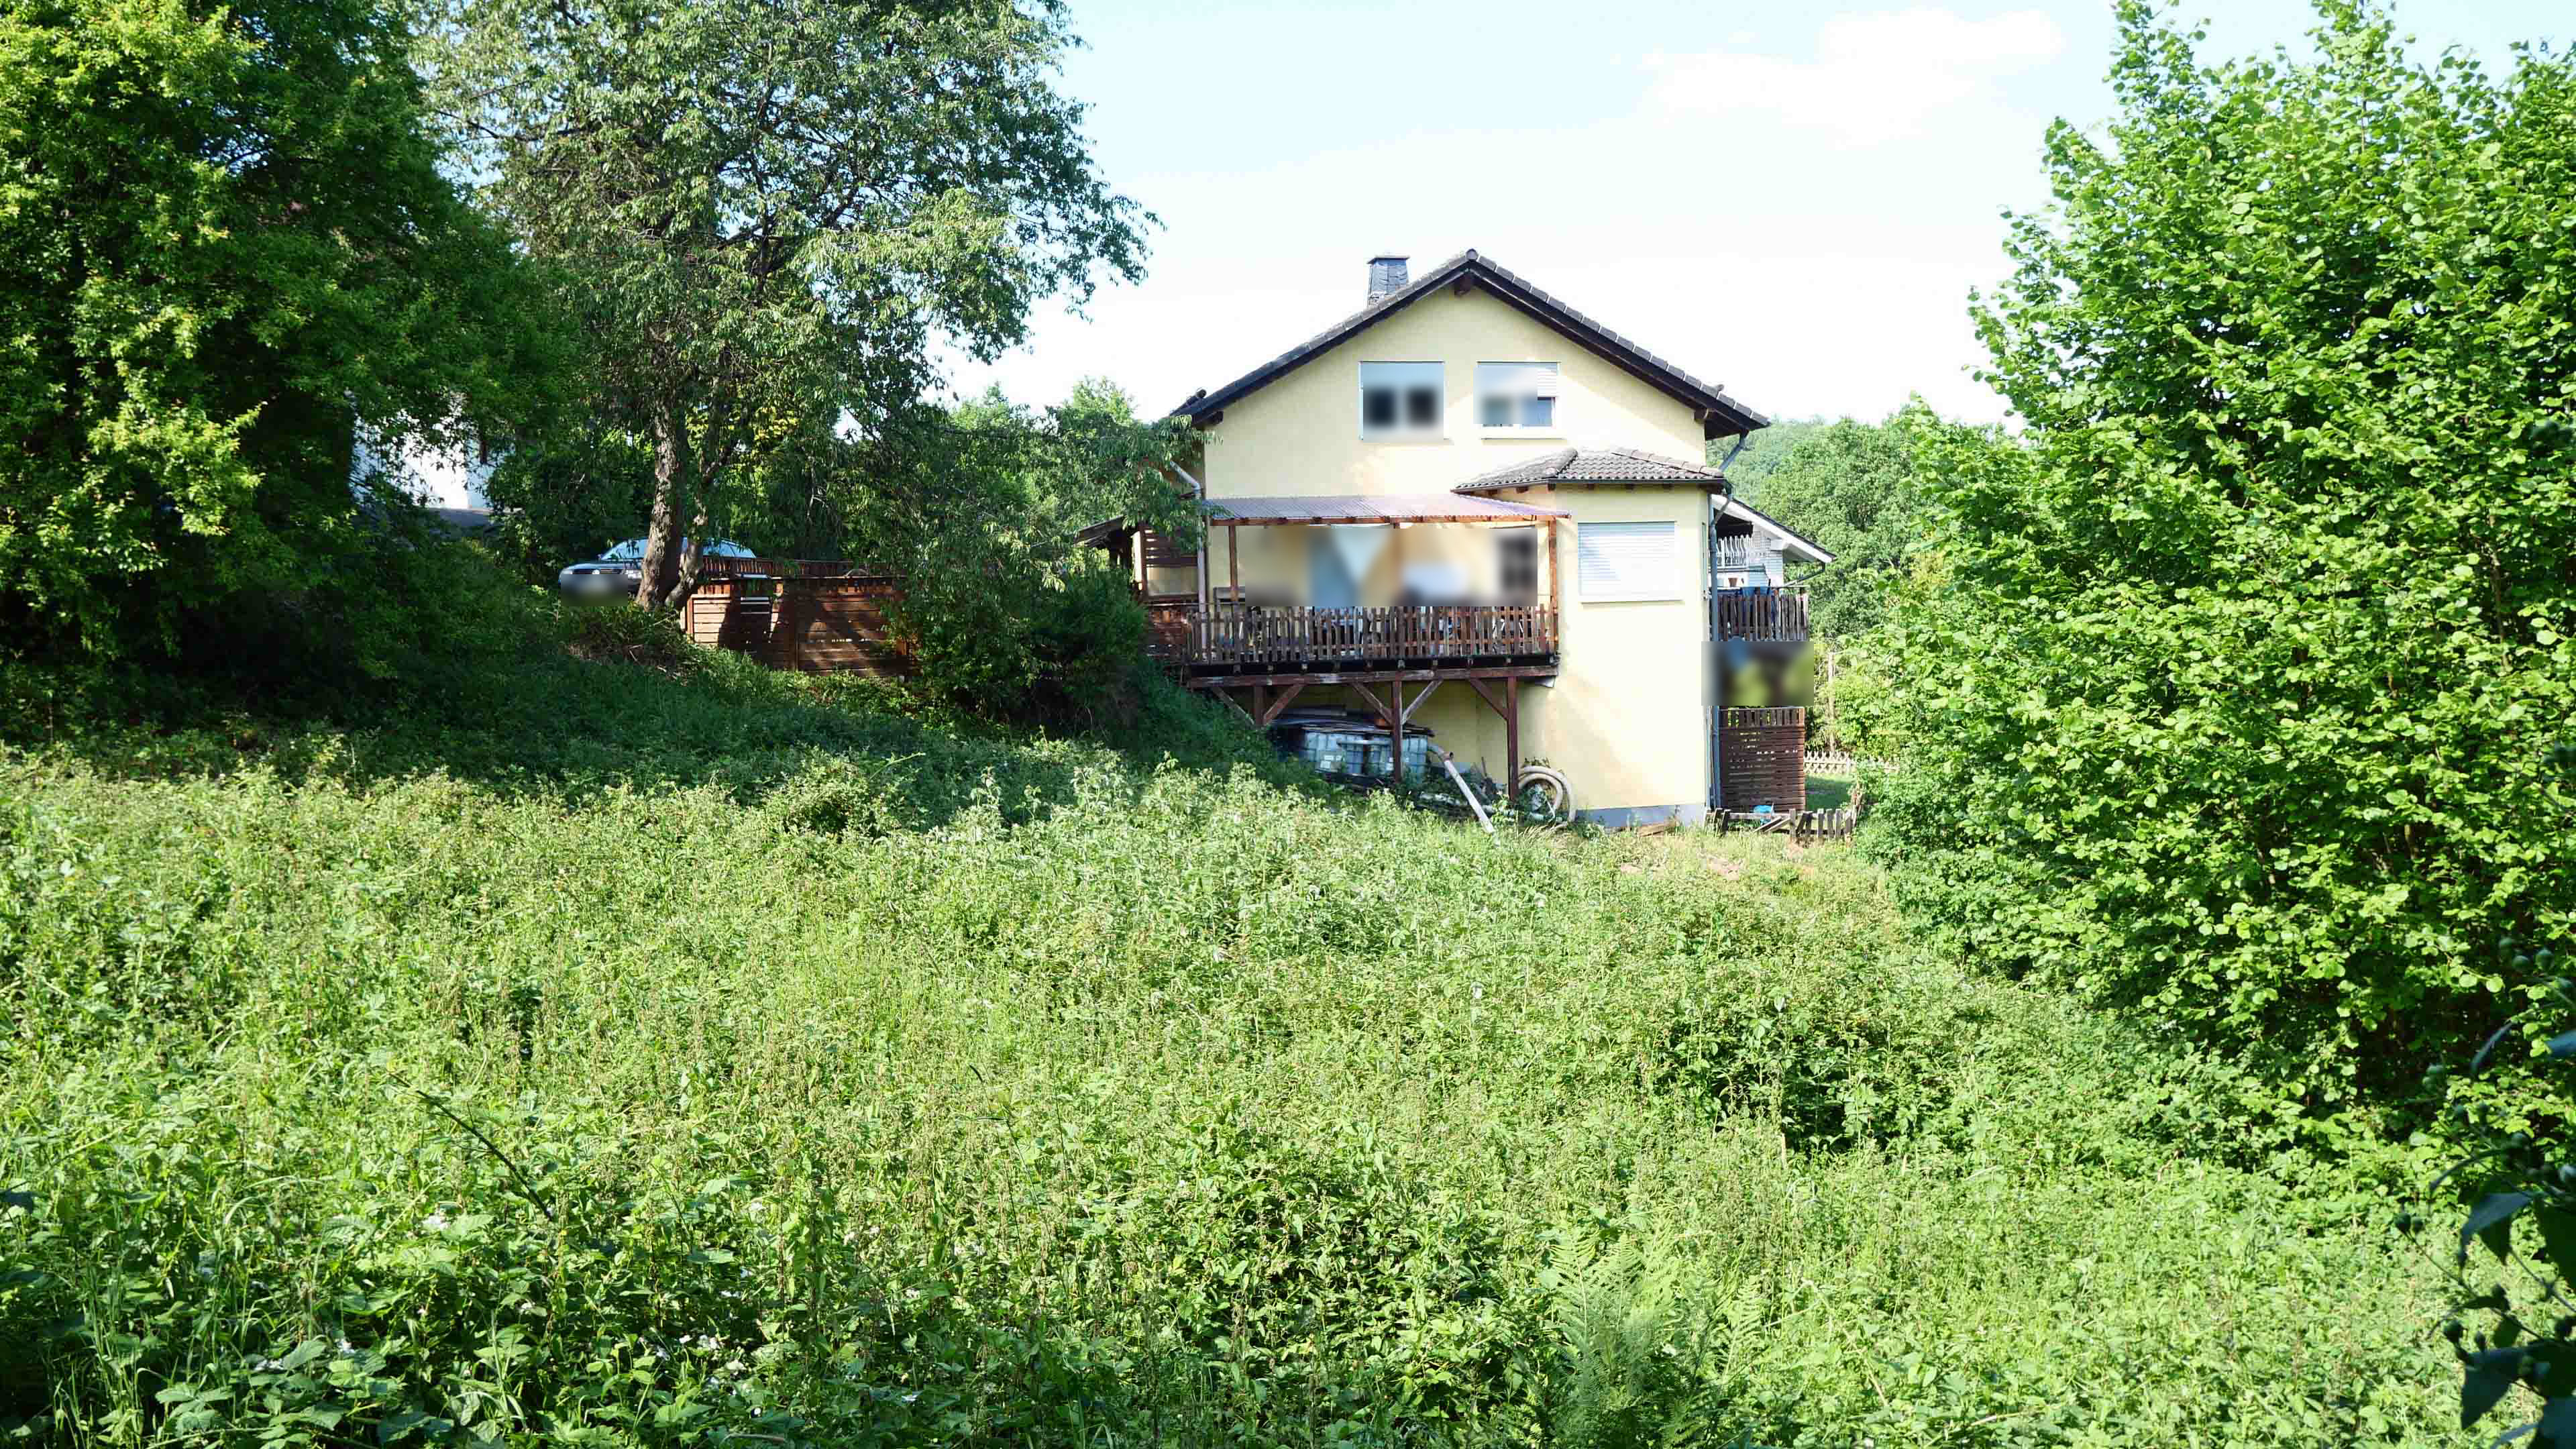 Morsbach-Holpe: Idealer Bauplatz für ein Haus mit mehreren Etagen, mögliche Bebauung: siehe Nachbarhaus